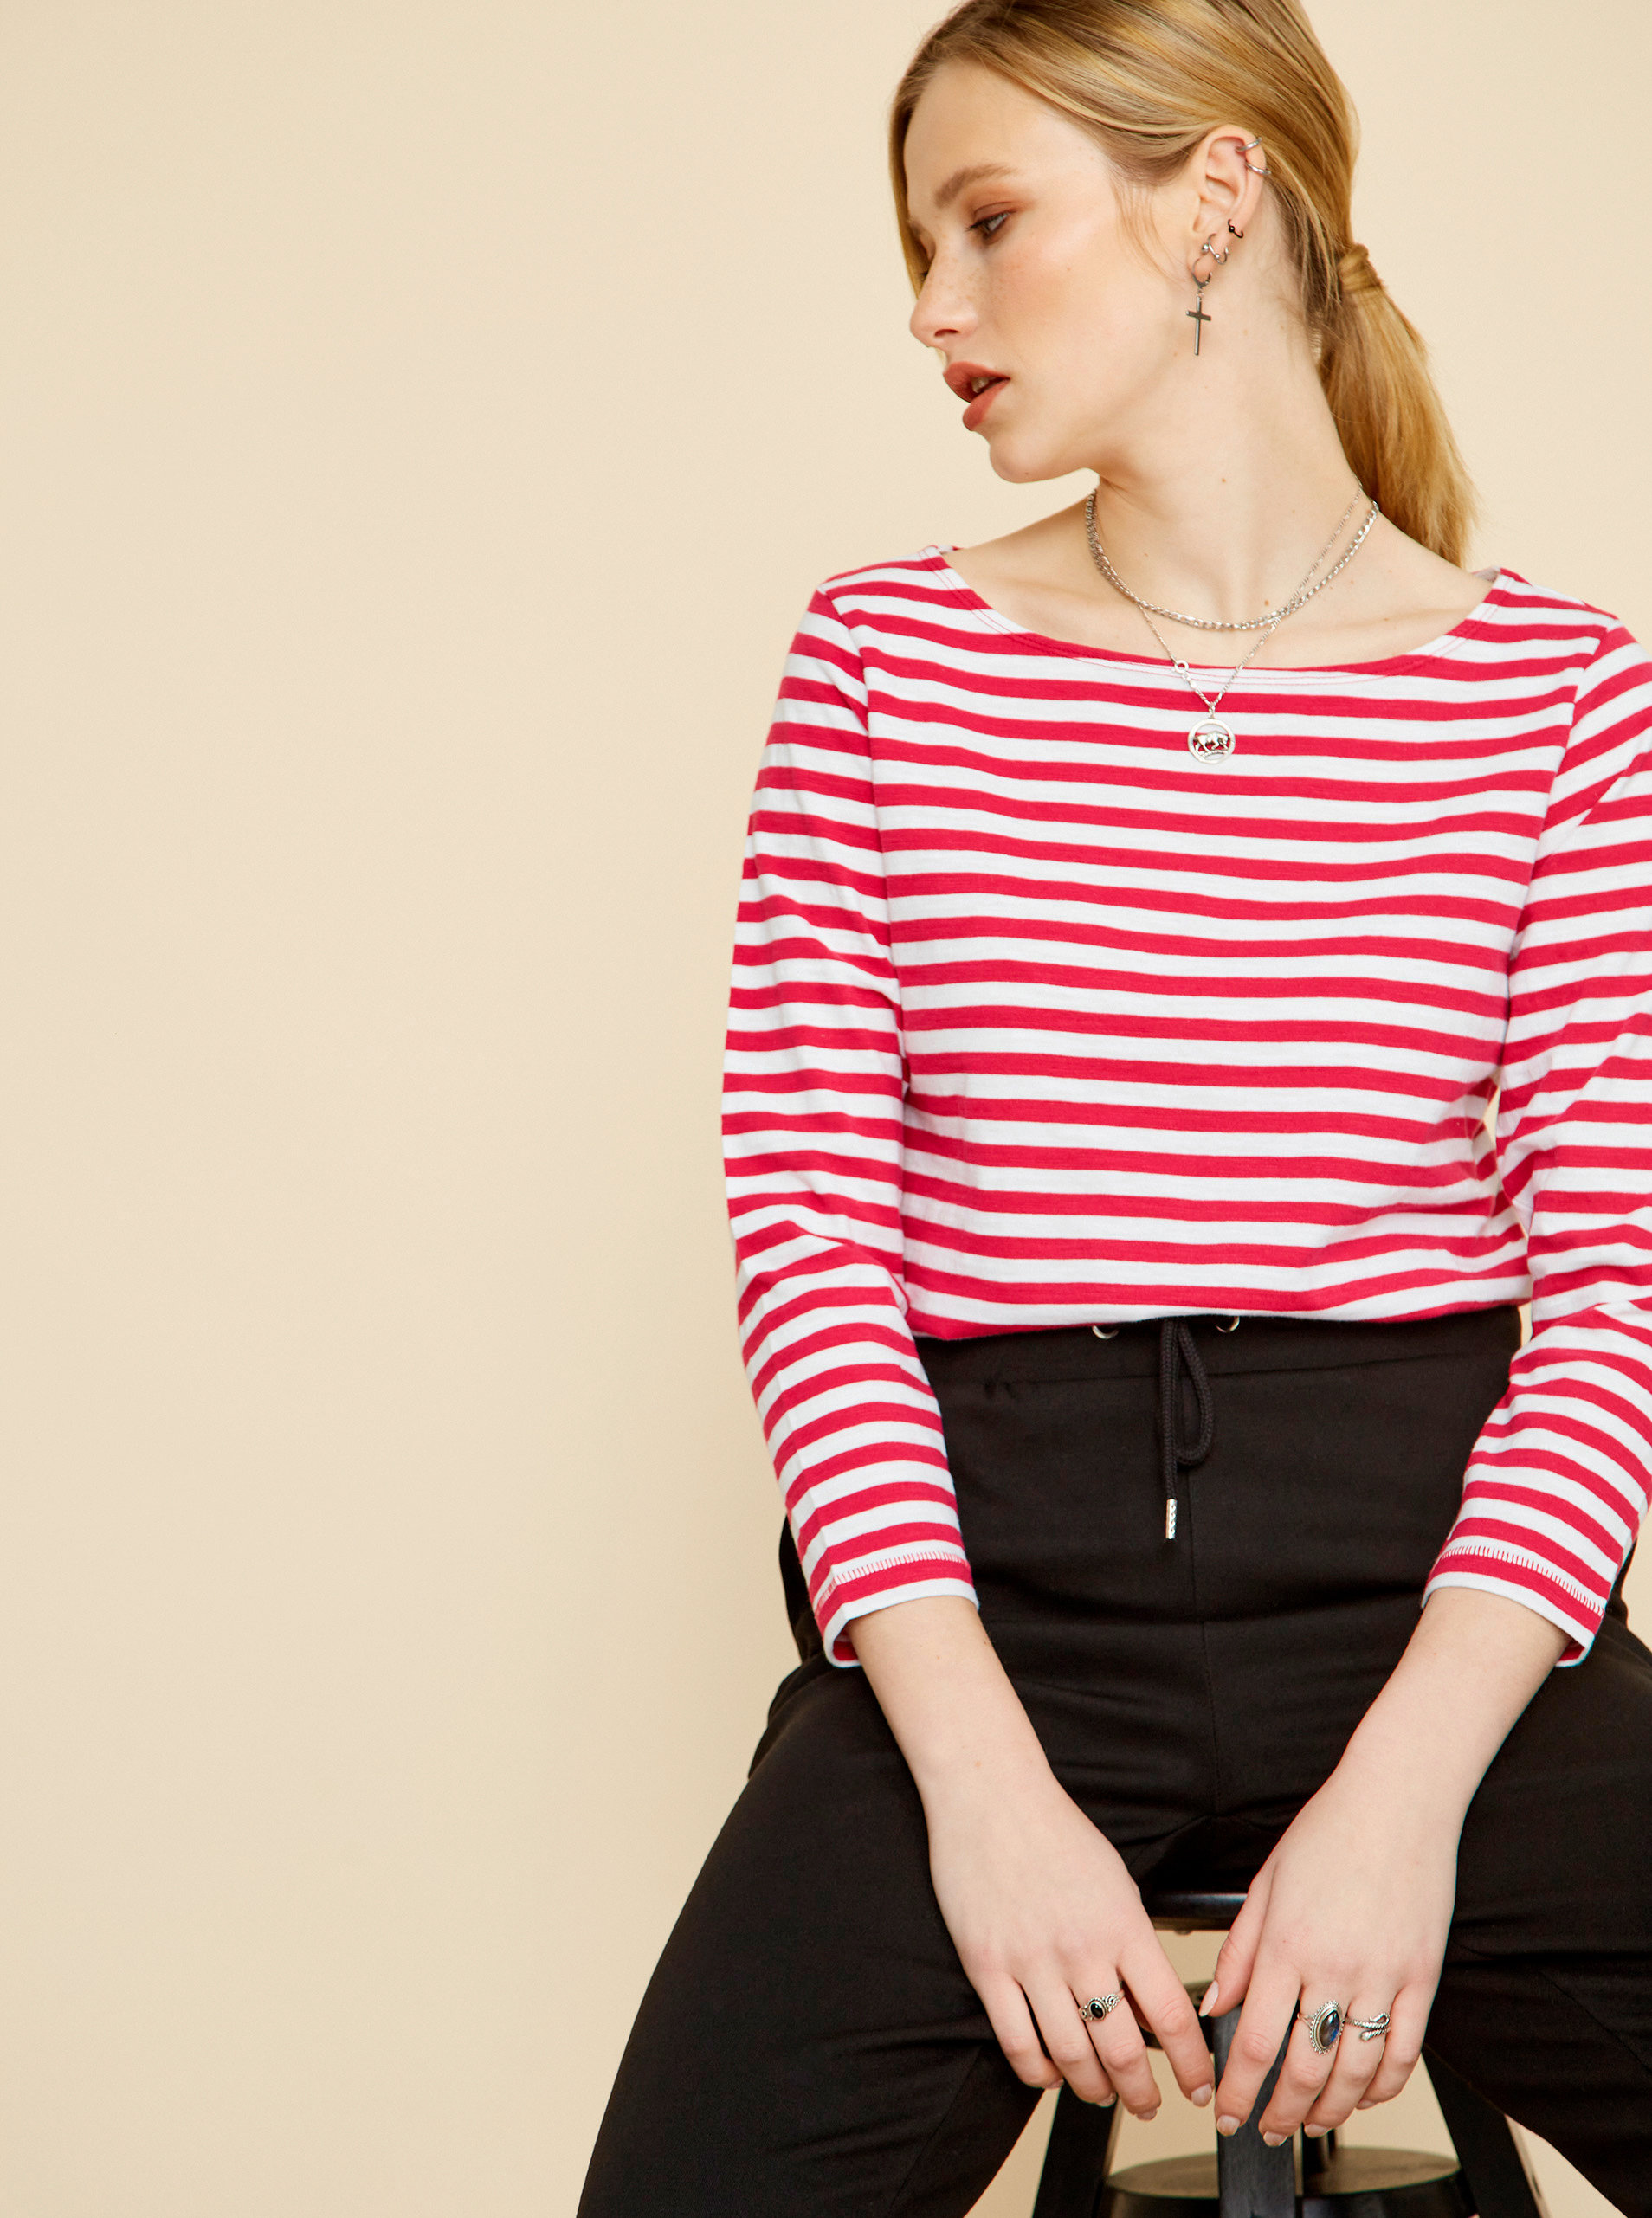 Fotografie Bílo-růžové dámské pruhované tričko ZOOT Baseline Amina